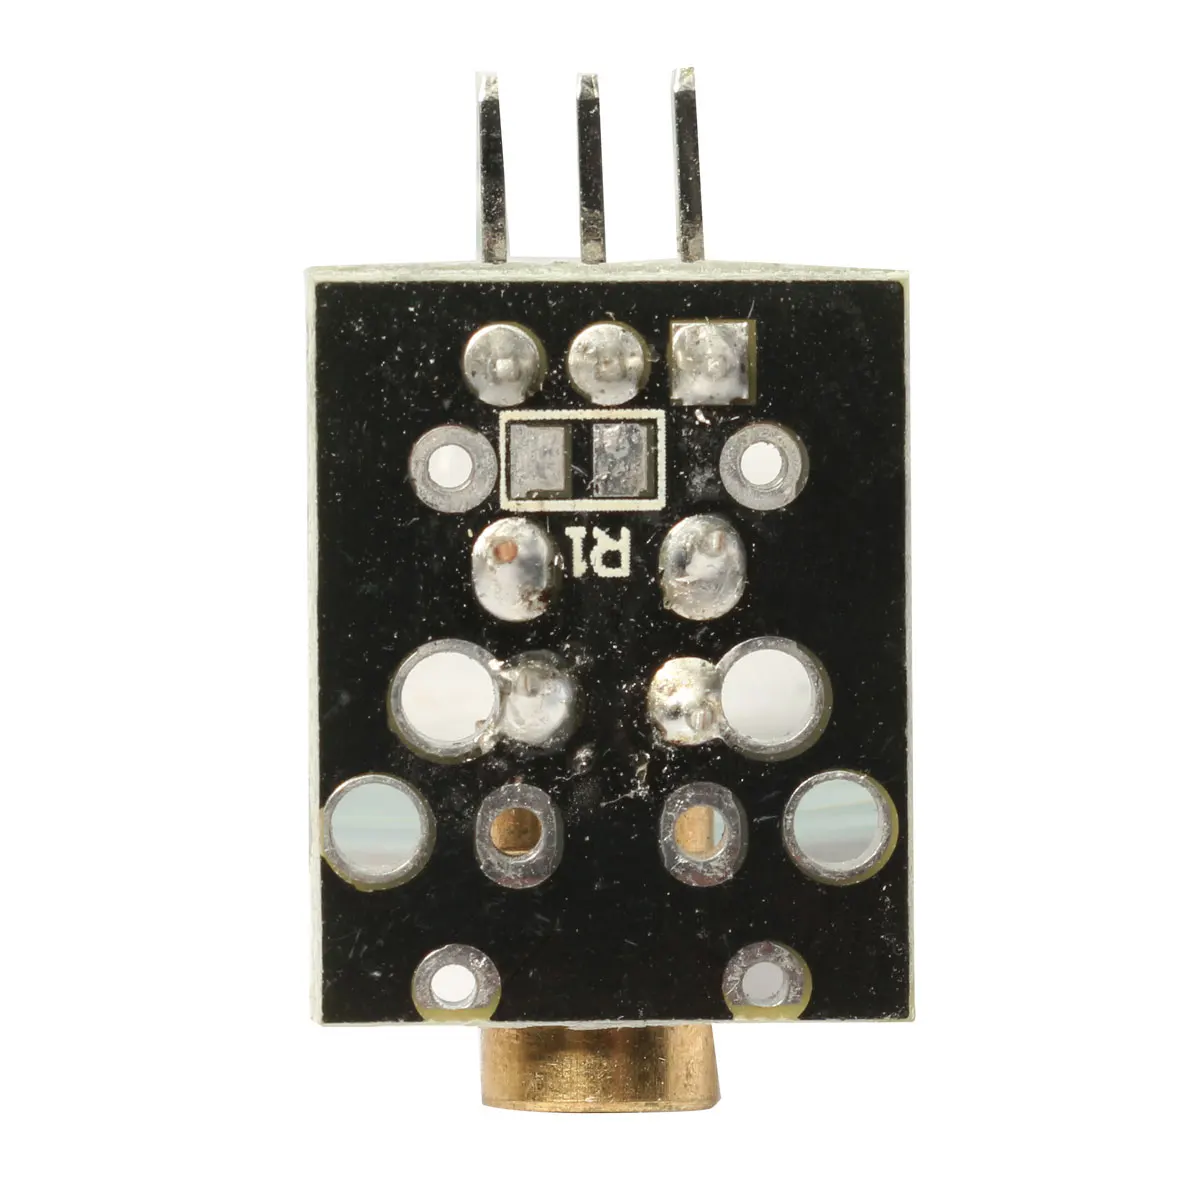 5V Sensor Module Board For Arduino AVR PIC KY-008 Laser Transmitter 650nm 